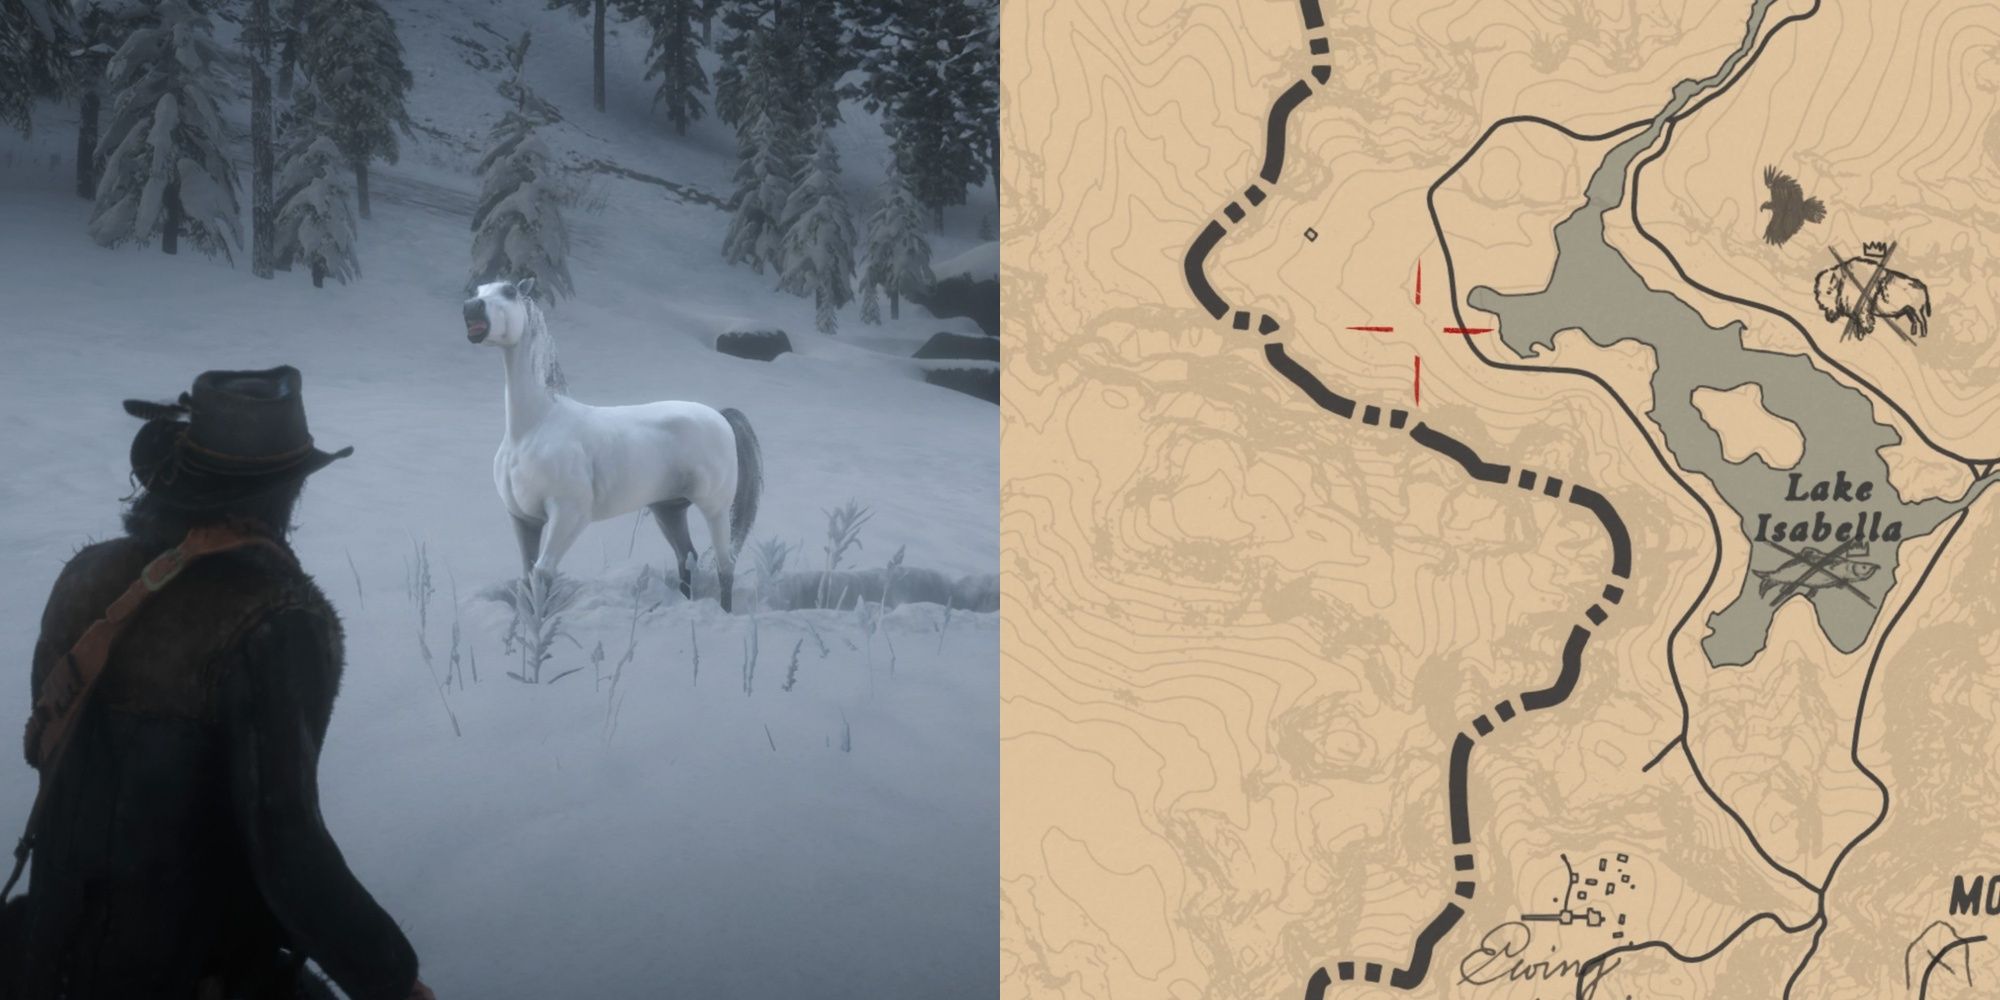 In Red Dead Redemption 2 nähert man sich dem Weißaraber im Schnee langsam und markiert den Standort des Pferdes am Lake Isabella auf der Karte im Spiel